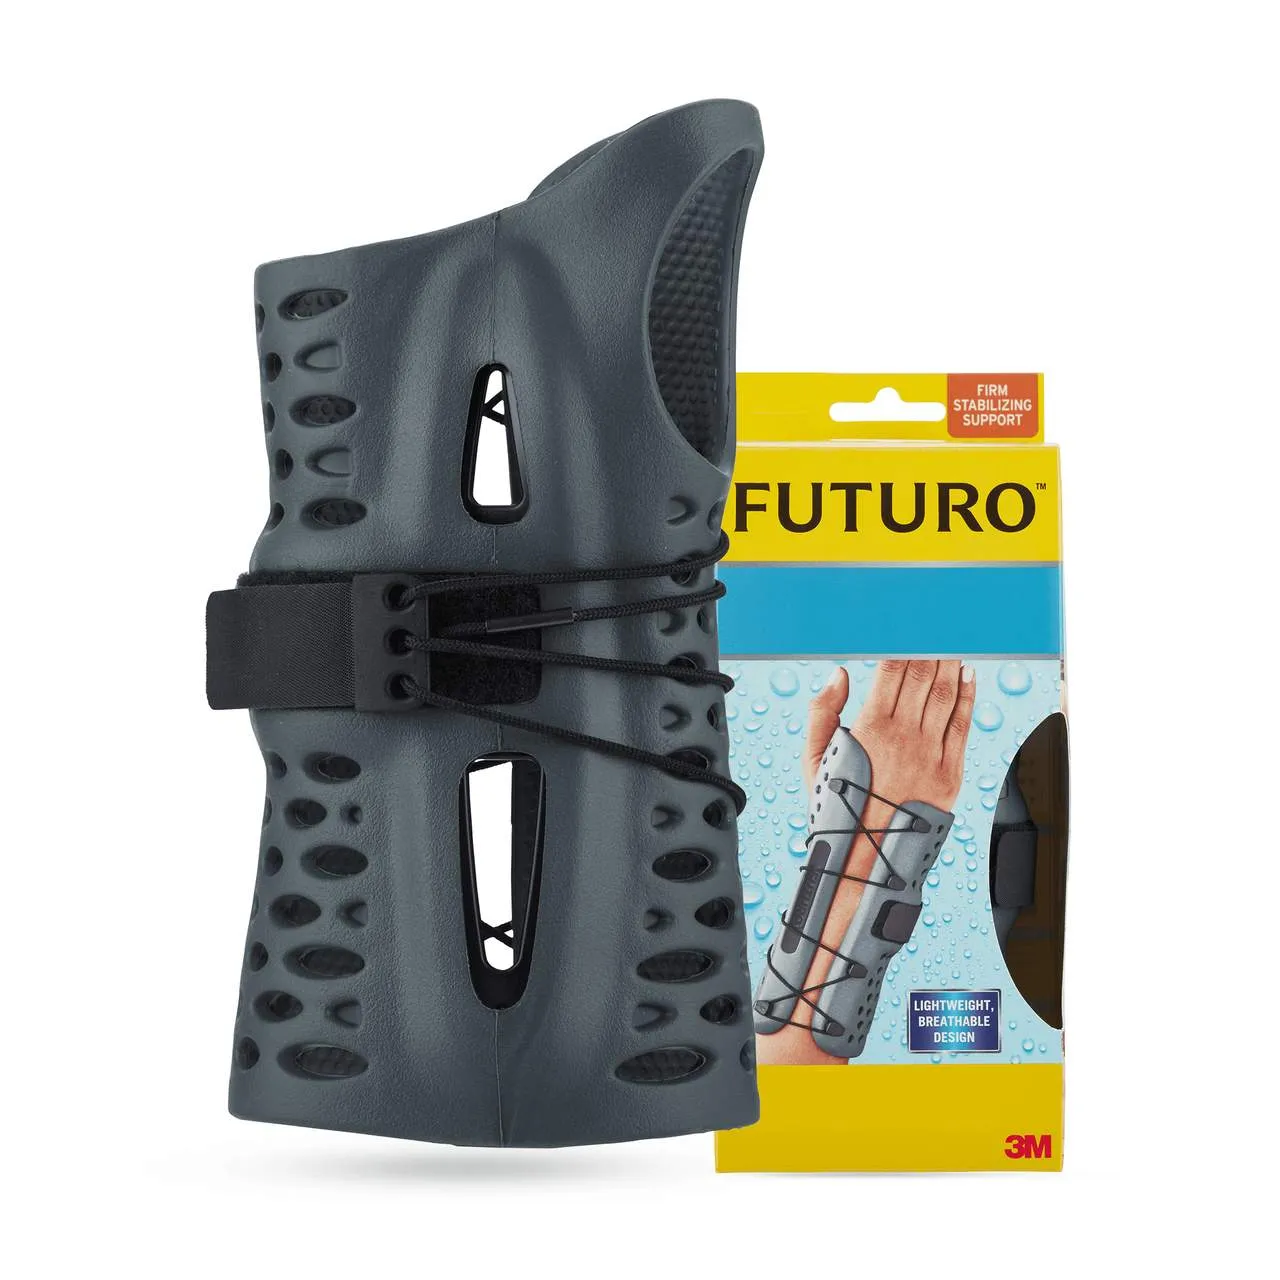 Futuro, wodoodporny stabilizator nadgarstka, lewa ręka, rozmiar L/XL, szary, 1 sztuka 